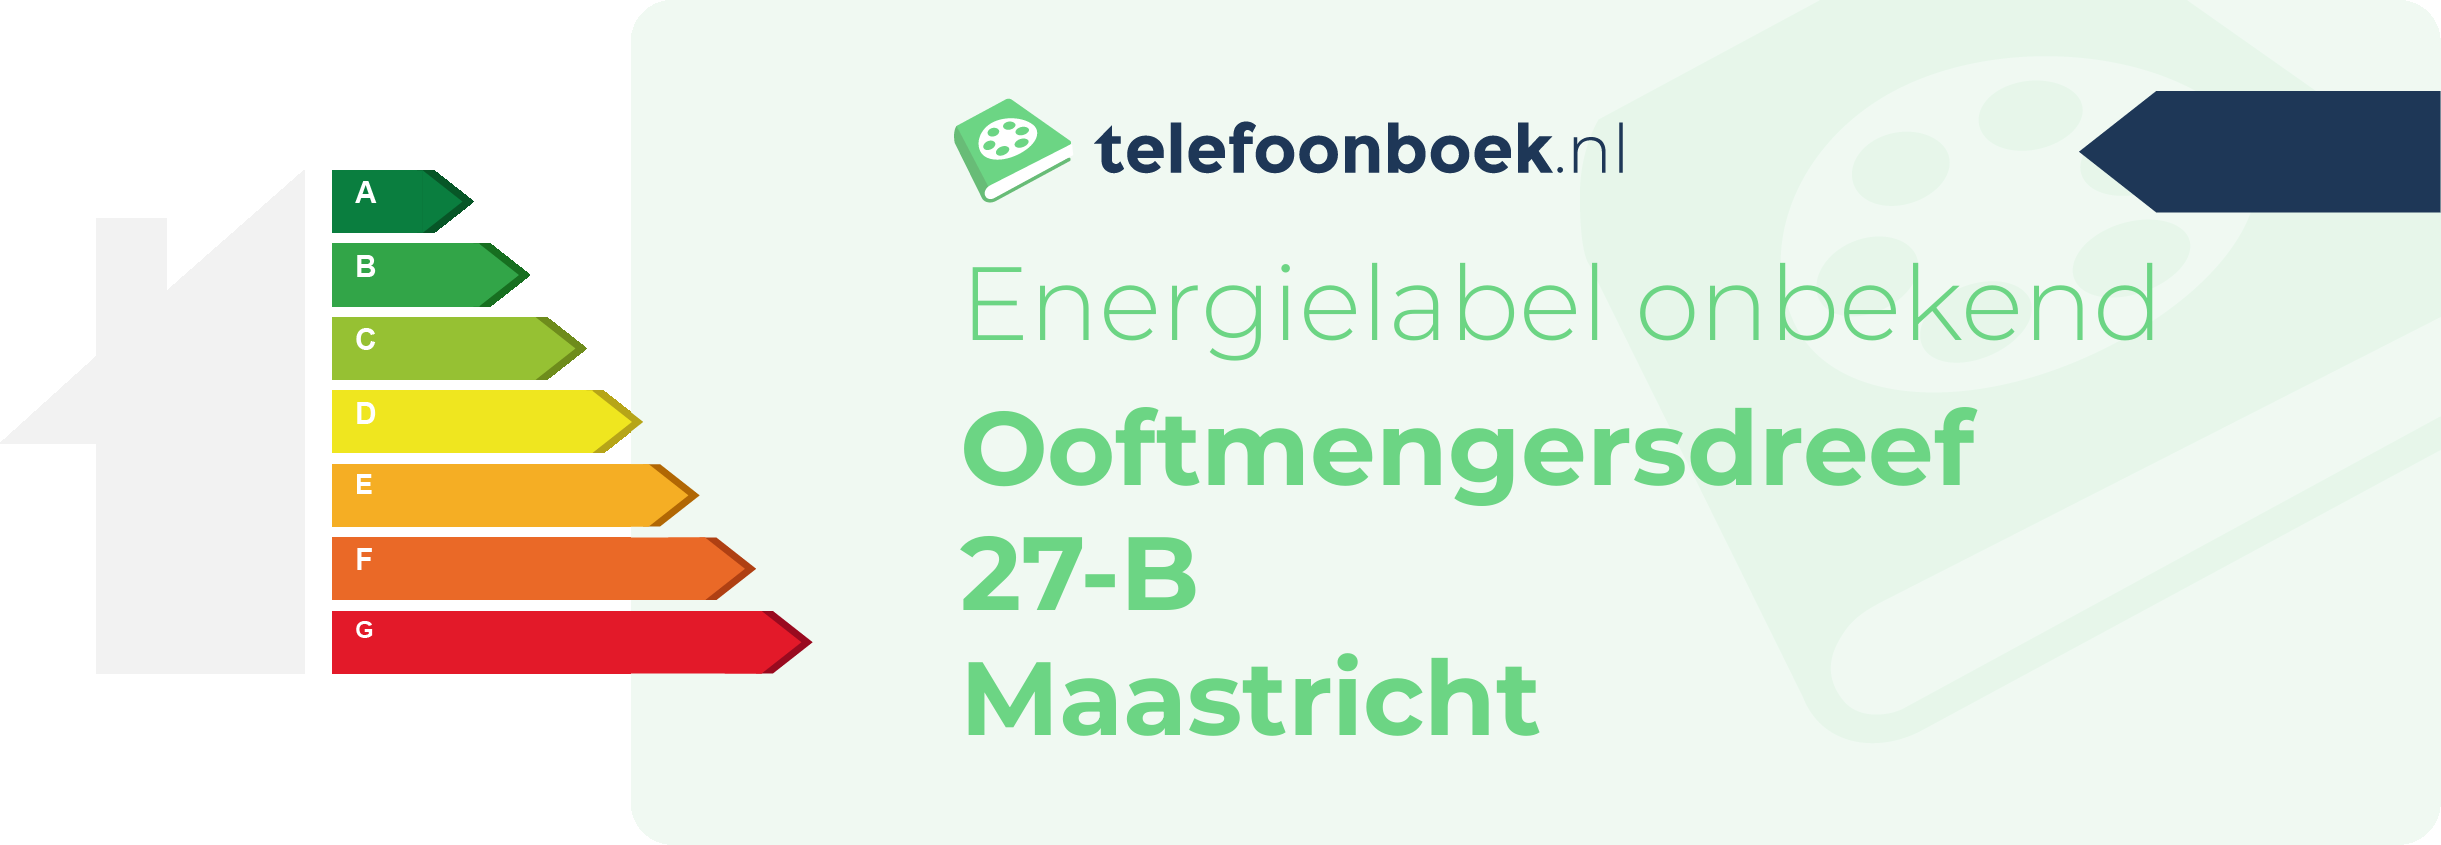 Energielabel Ooftmengersdreef 27-B Maastricht